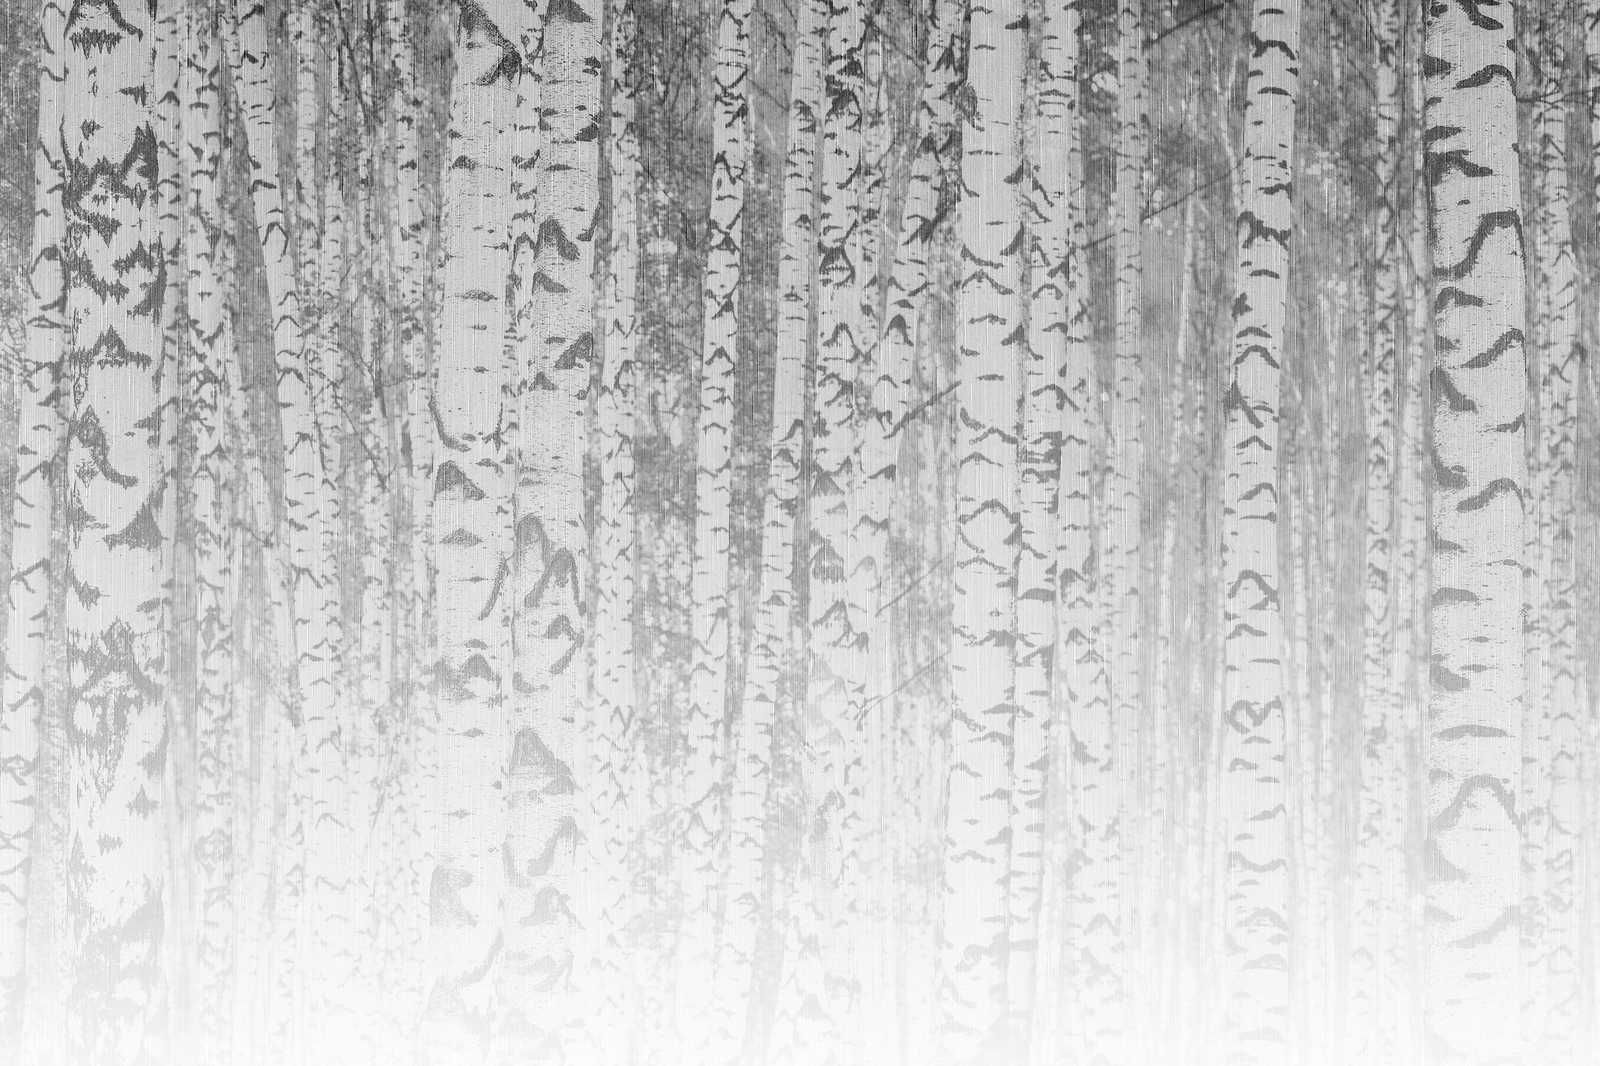             Toile Bouleaux clairs Troncs d'arbres dans la forêt brumeuse - 0,90 m x 0,60 m
        